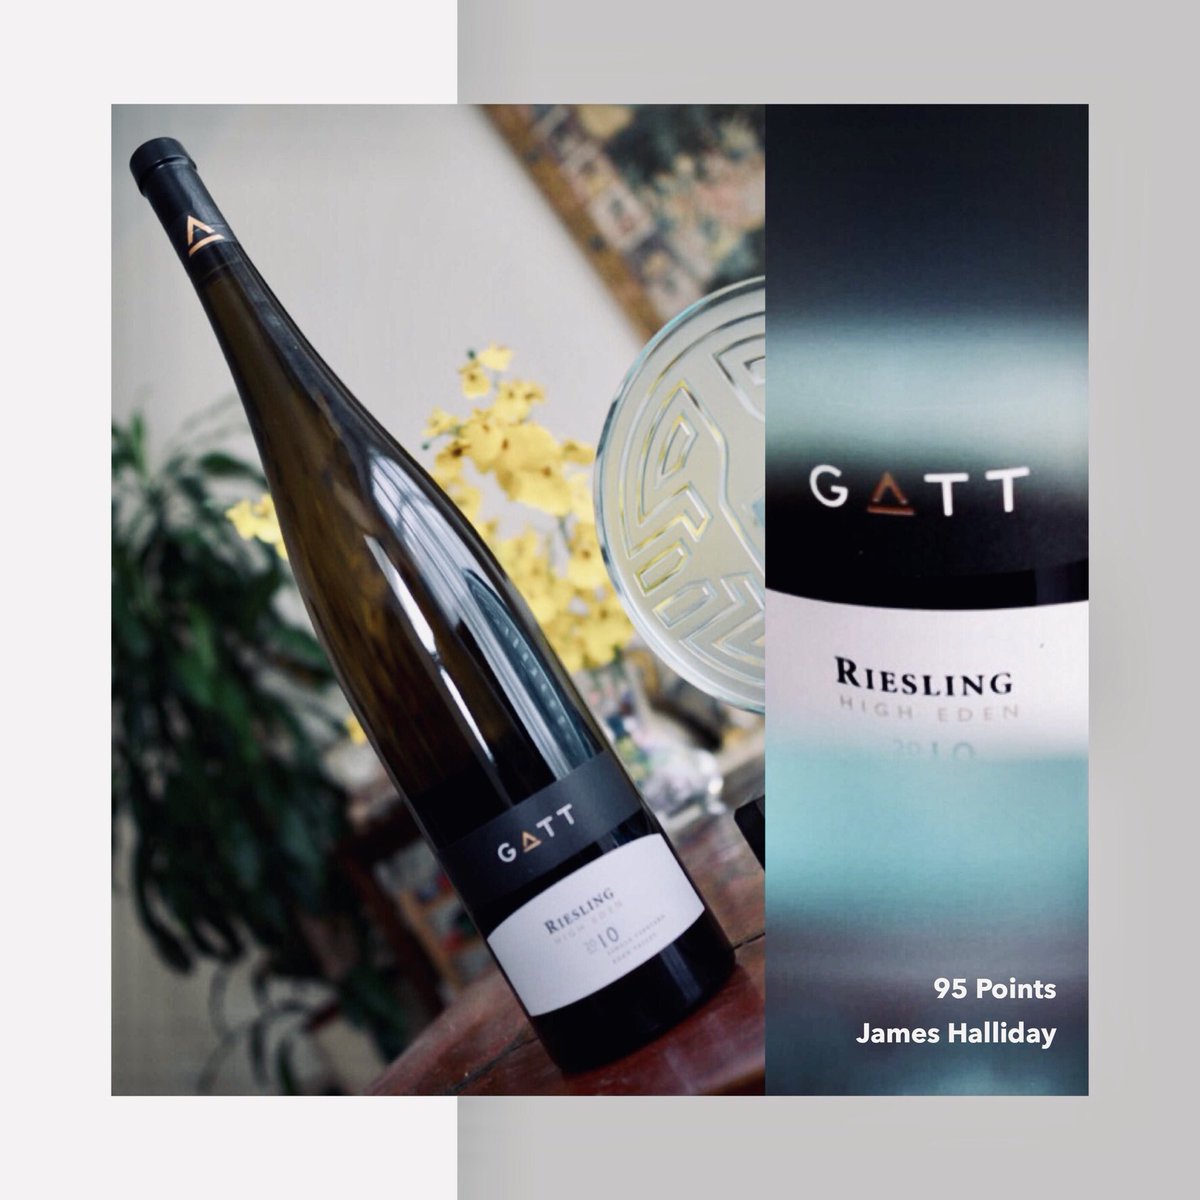 傳奇繼續 | The saga continues 👏 👏👏 Gatt Riesling 2010 was just awarded 95 points by James Halliday. Gatt Wines are available in 🇭🇰 @selectionhh selection-hermann-hofmann.com

#awardwinningwines #aussiewines #hkwinelovers #wineindustry #hkwine #gattwines #hermannhofmann